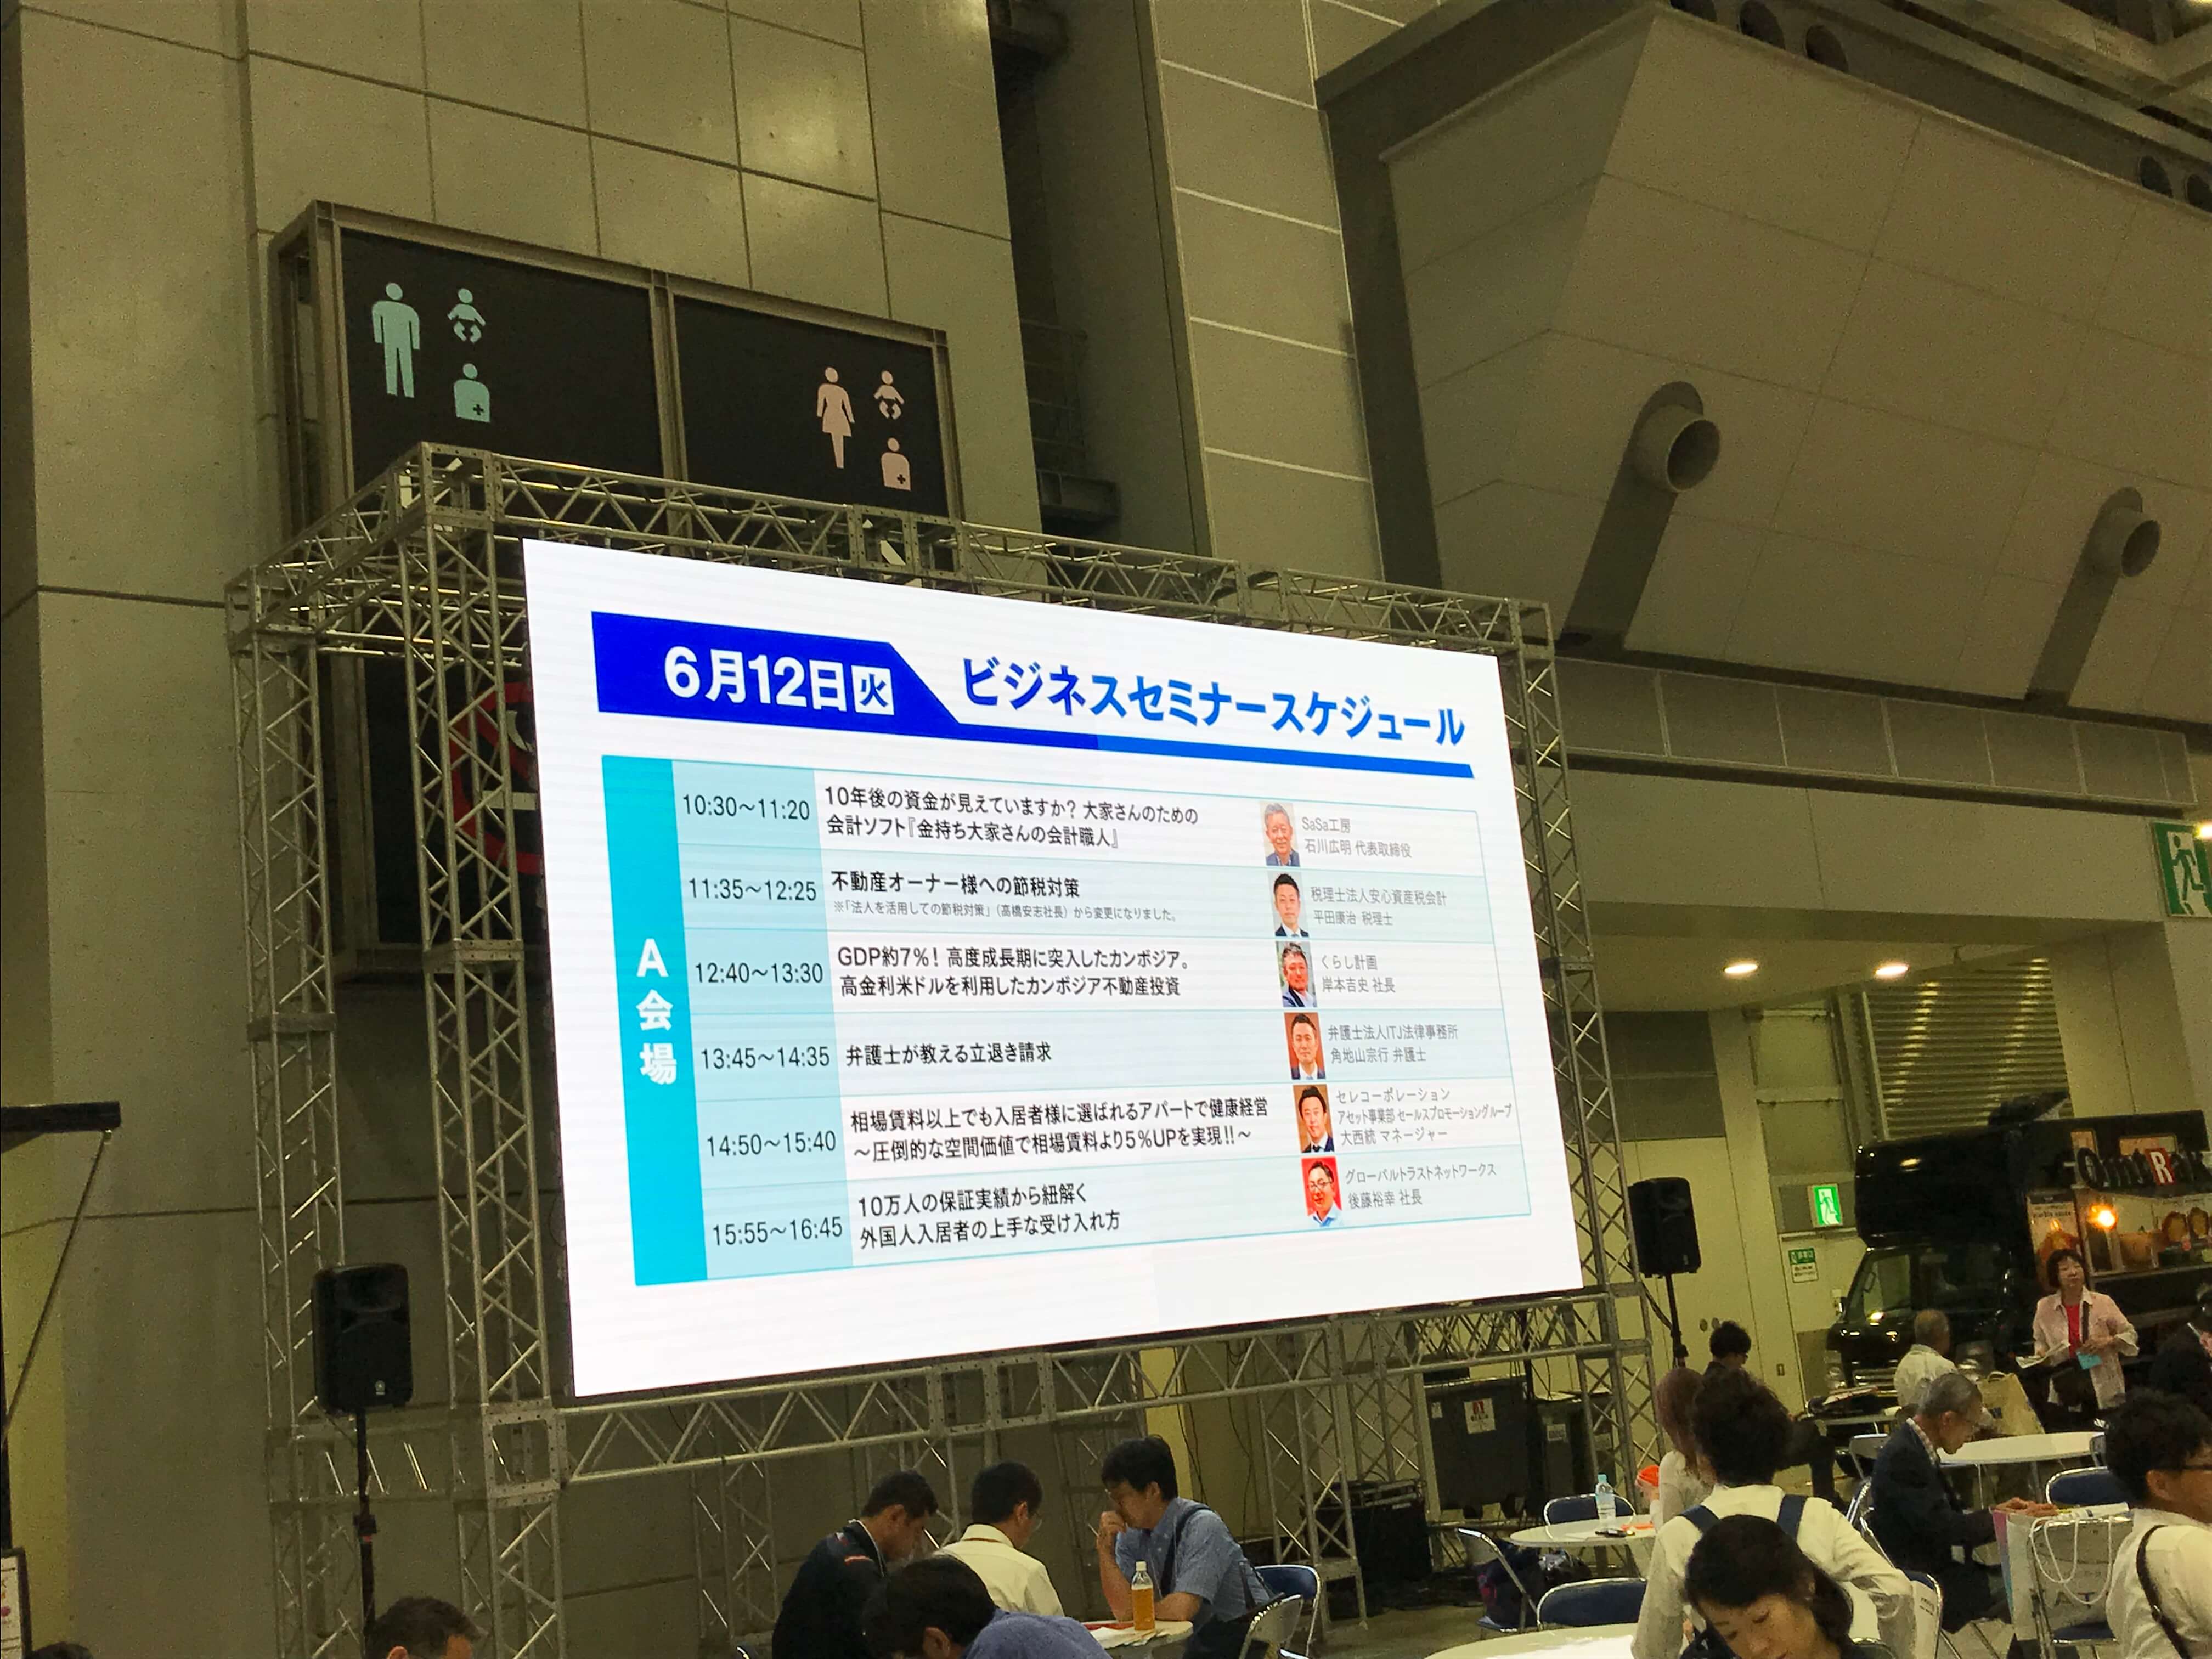 賃貸住宅フェア2018 in TOKYO / 会場大型LEDインフォメーションボード